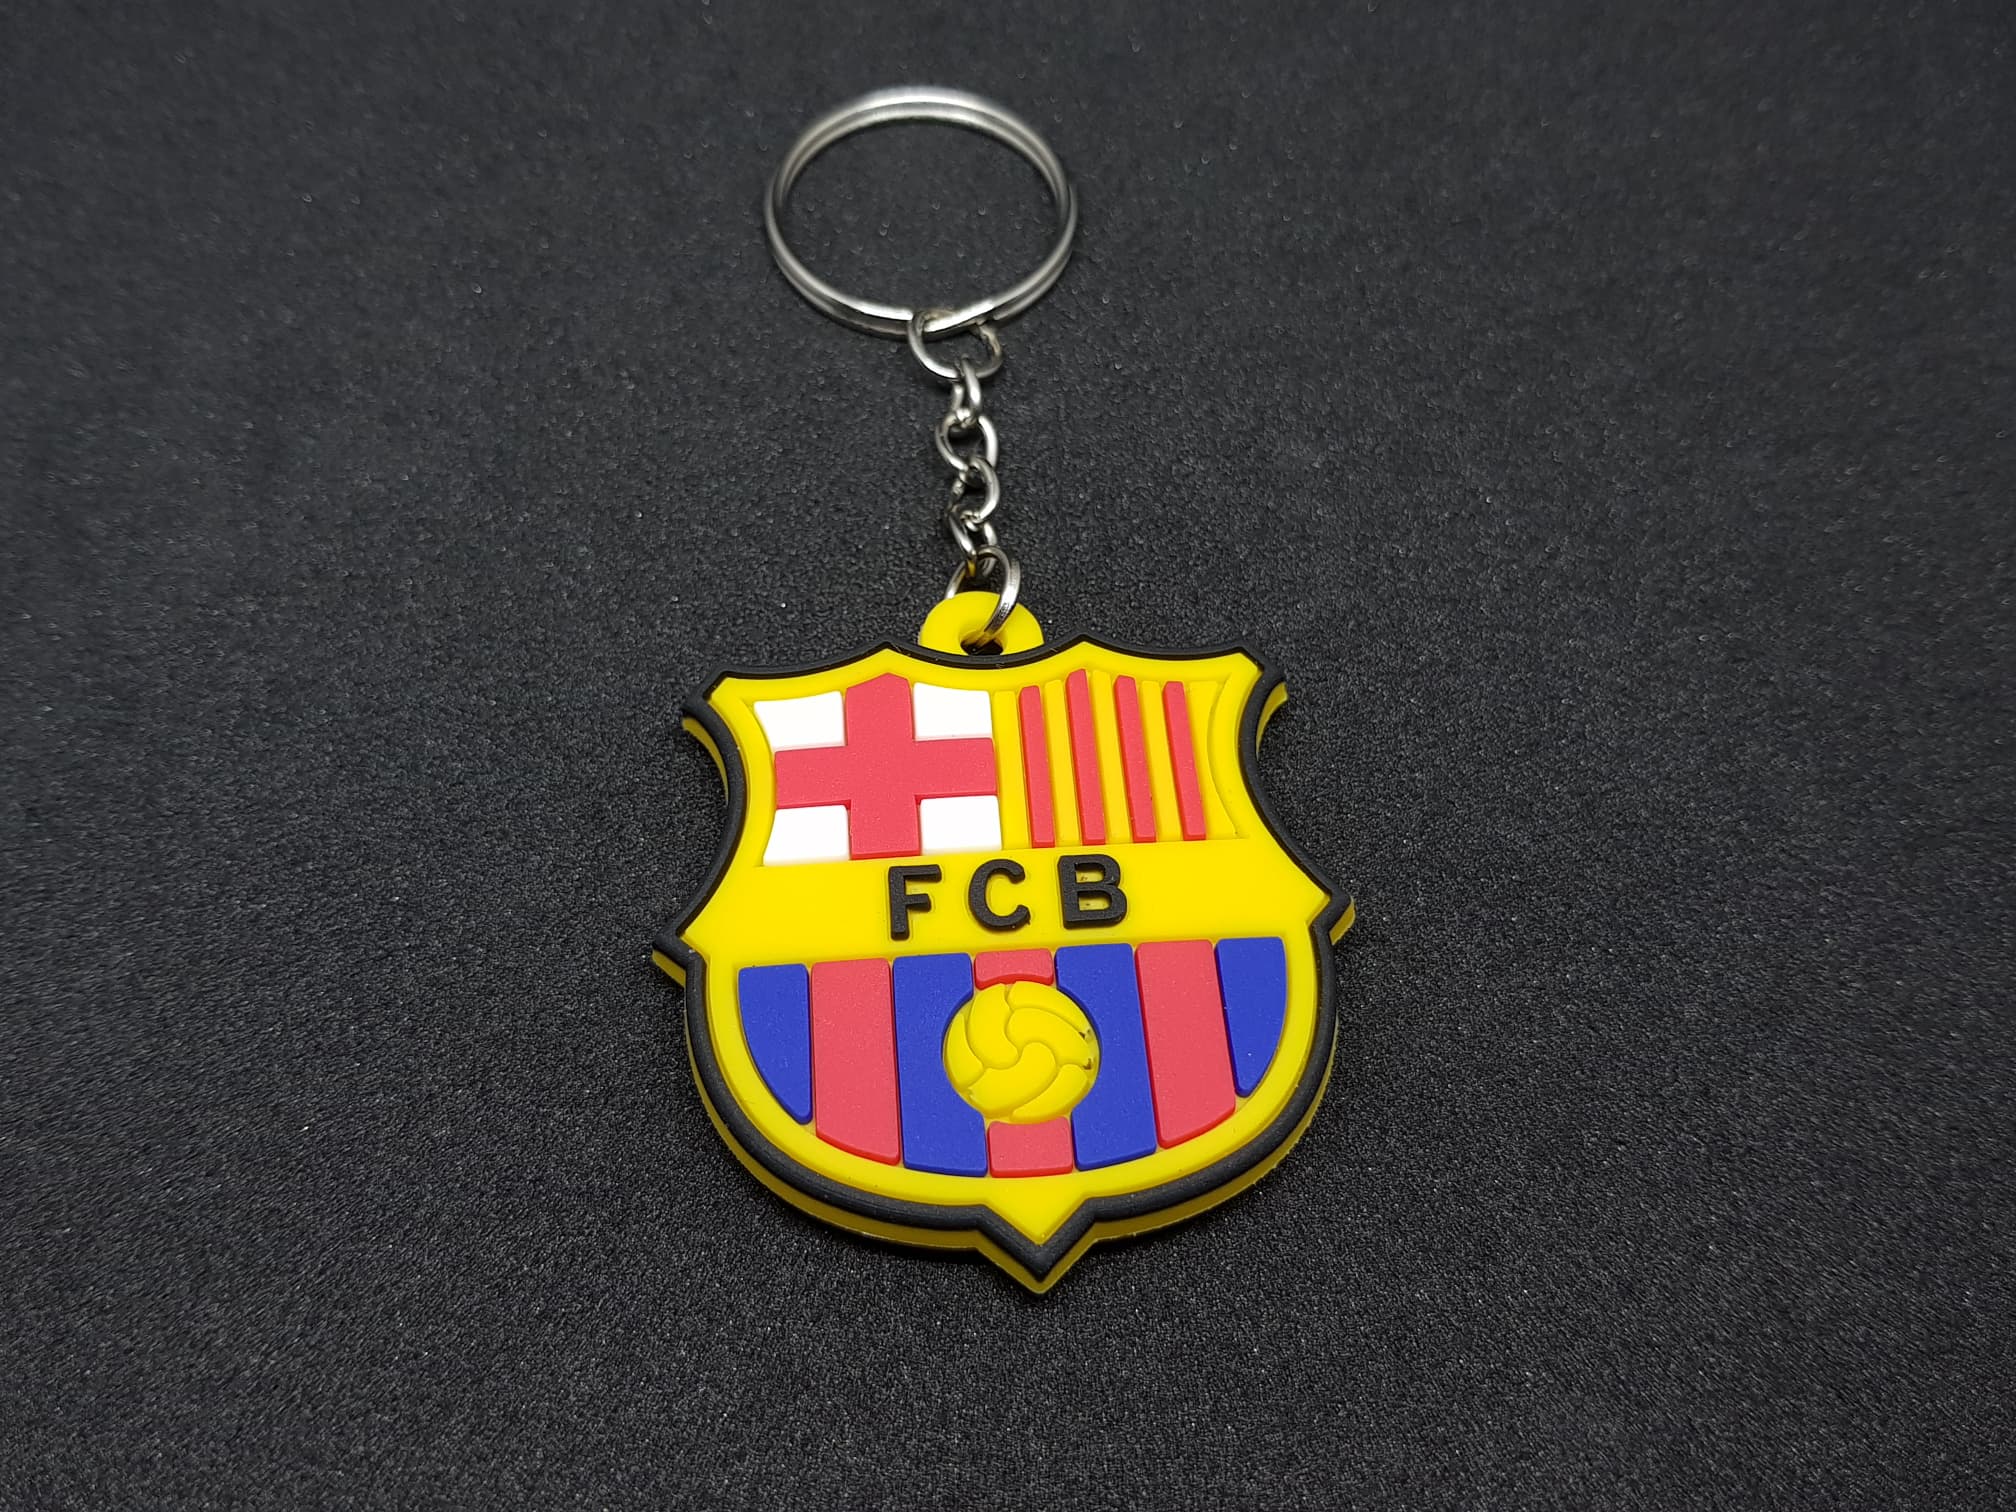 พวงกุญแจ สโมสรฟุตบอลบาร์เซโลนา (FC Barcelona) พวงกุญแจบาร์ซ่า